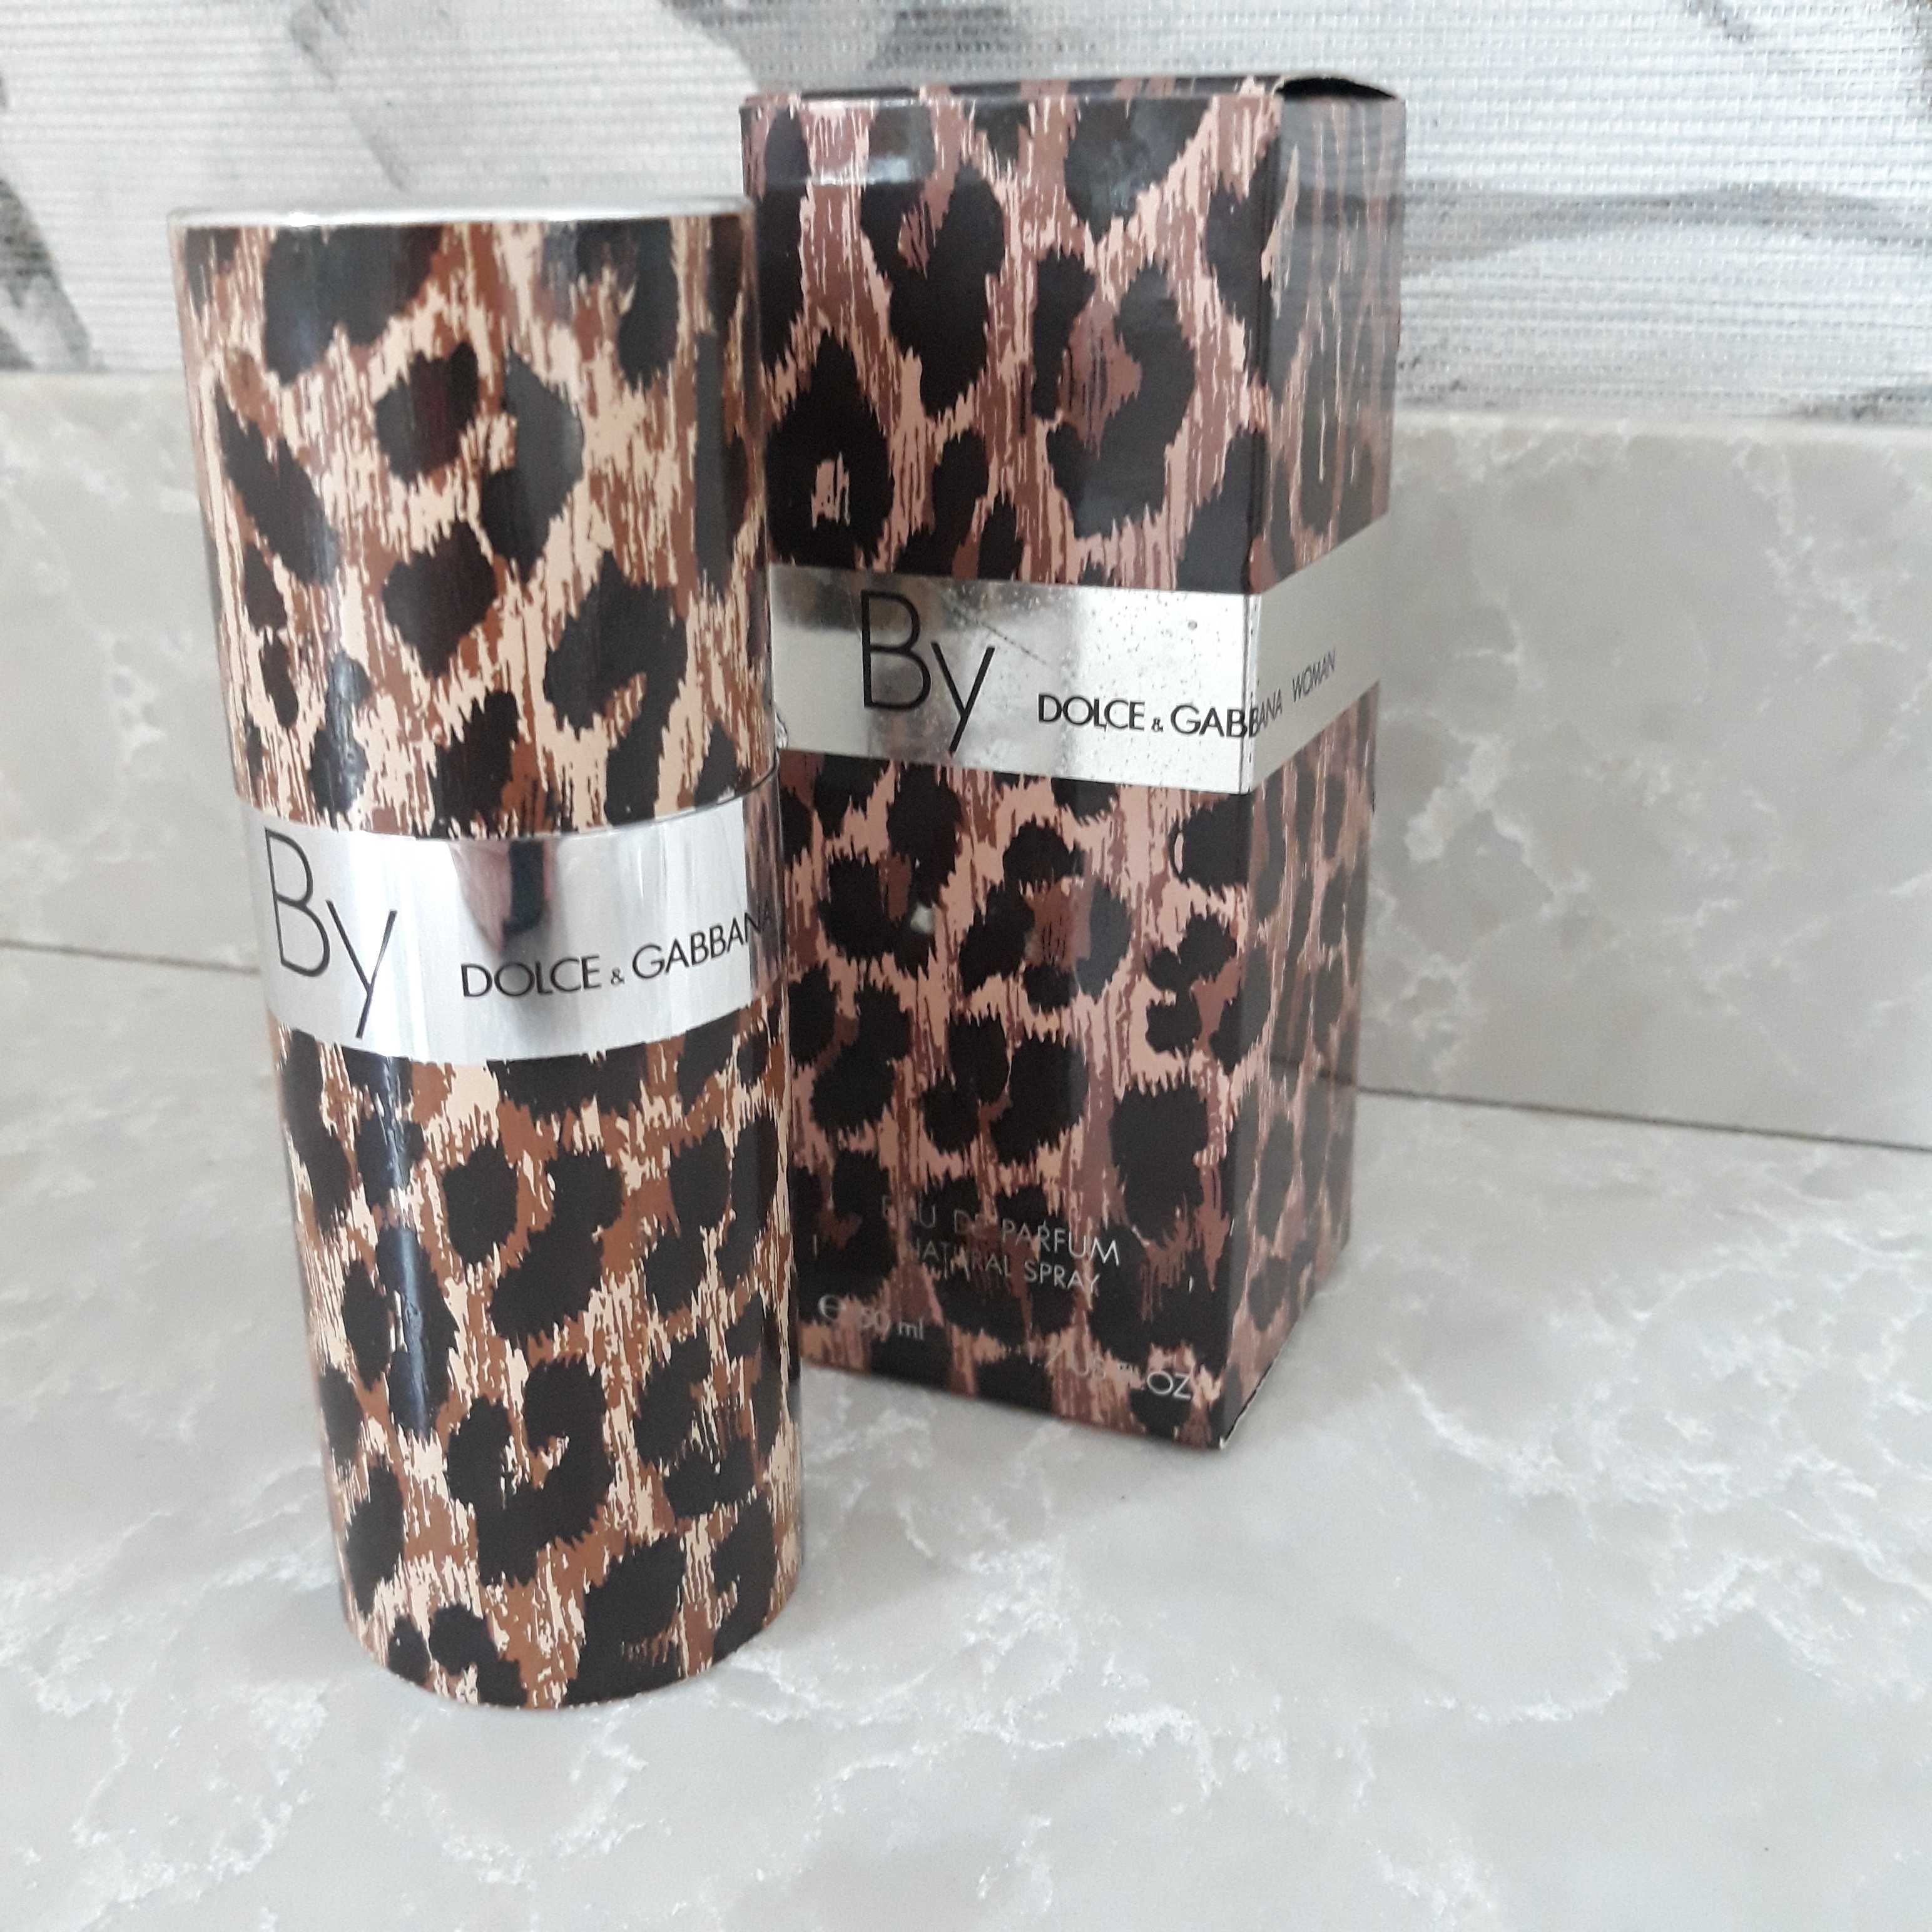 By Dolce & Gabbana WOMAN 50ml EdP Produkt UNIKAT !!